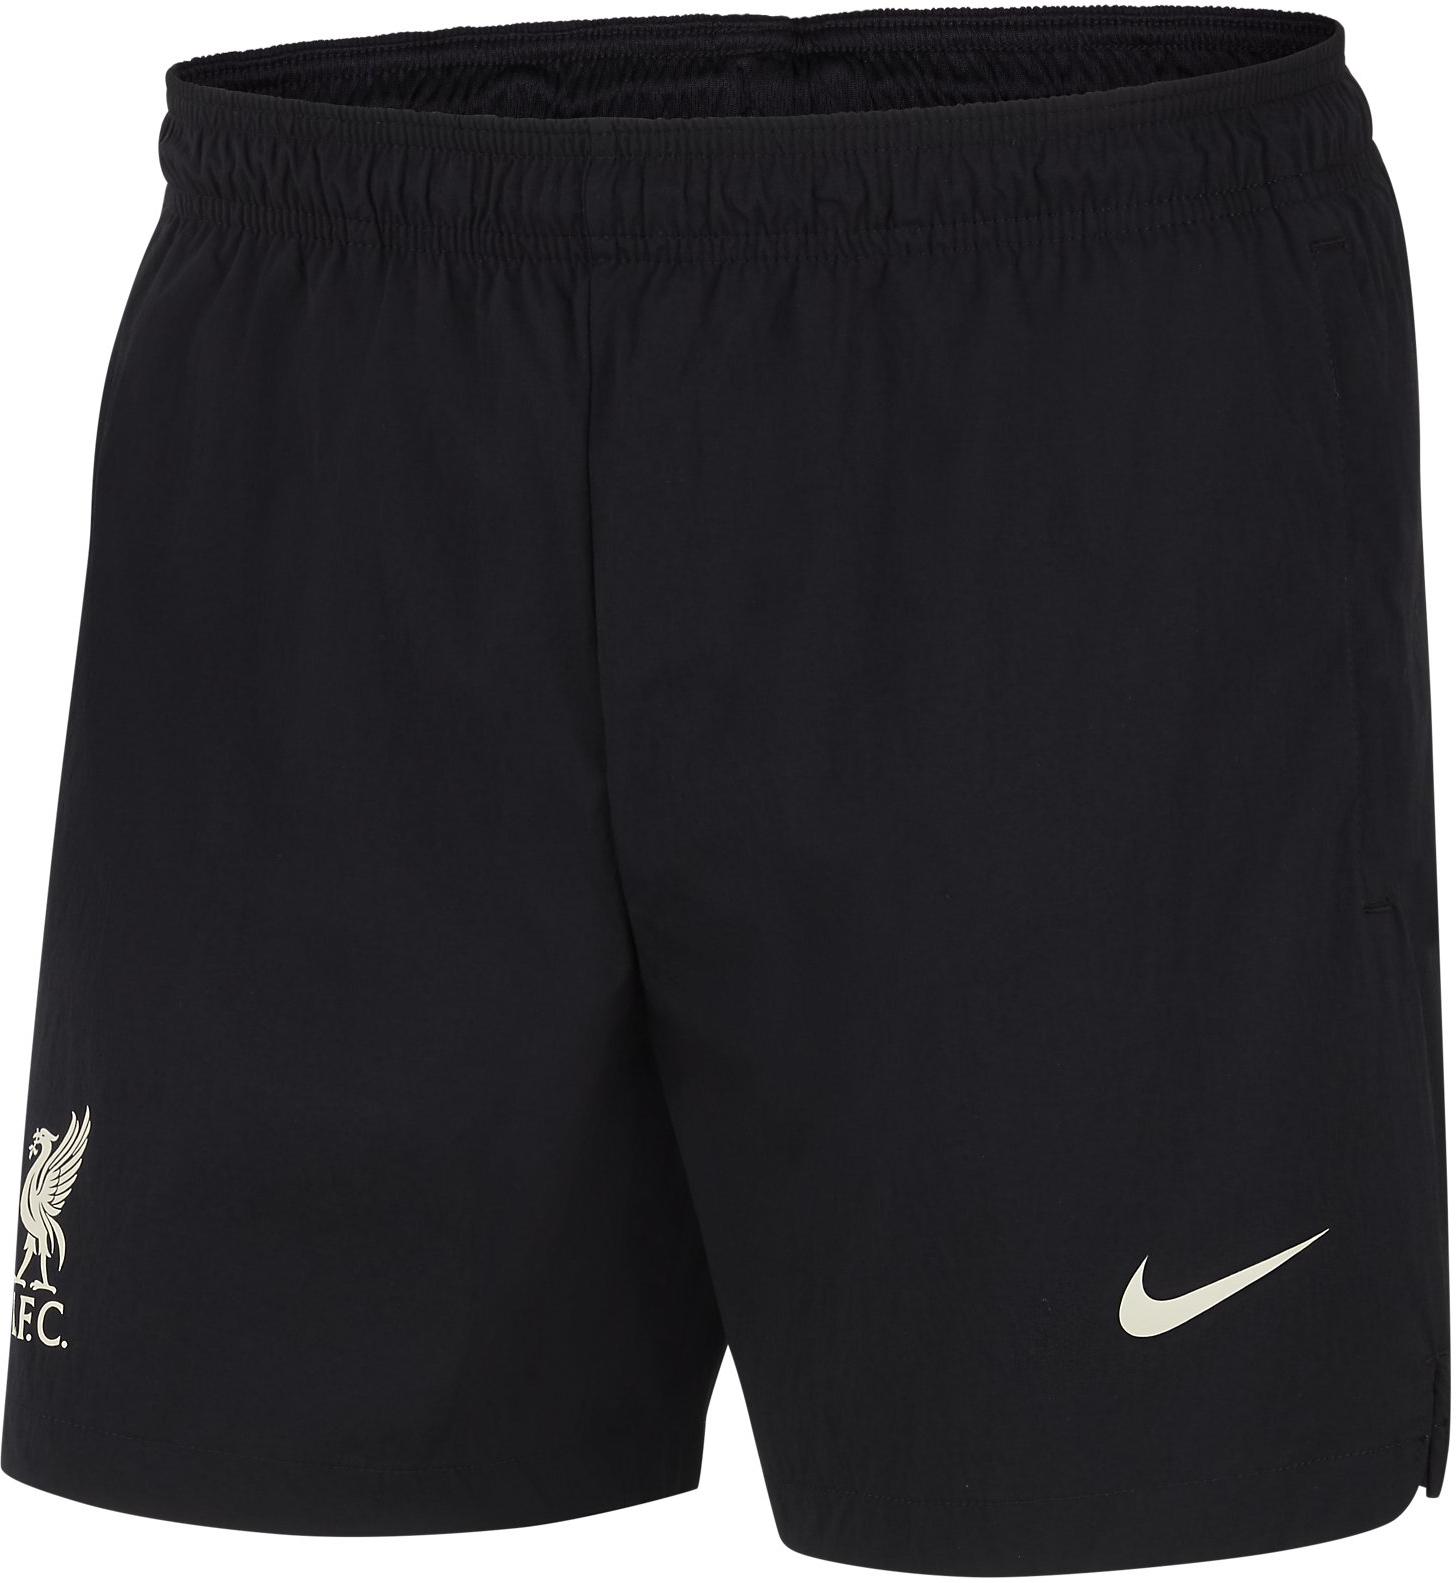 Sorturi Nike Liverpool FC Men s Woven Soccer Shorts